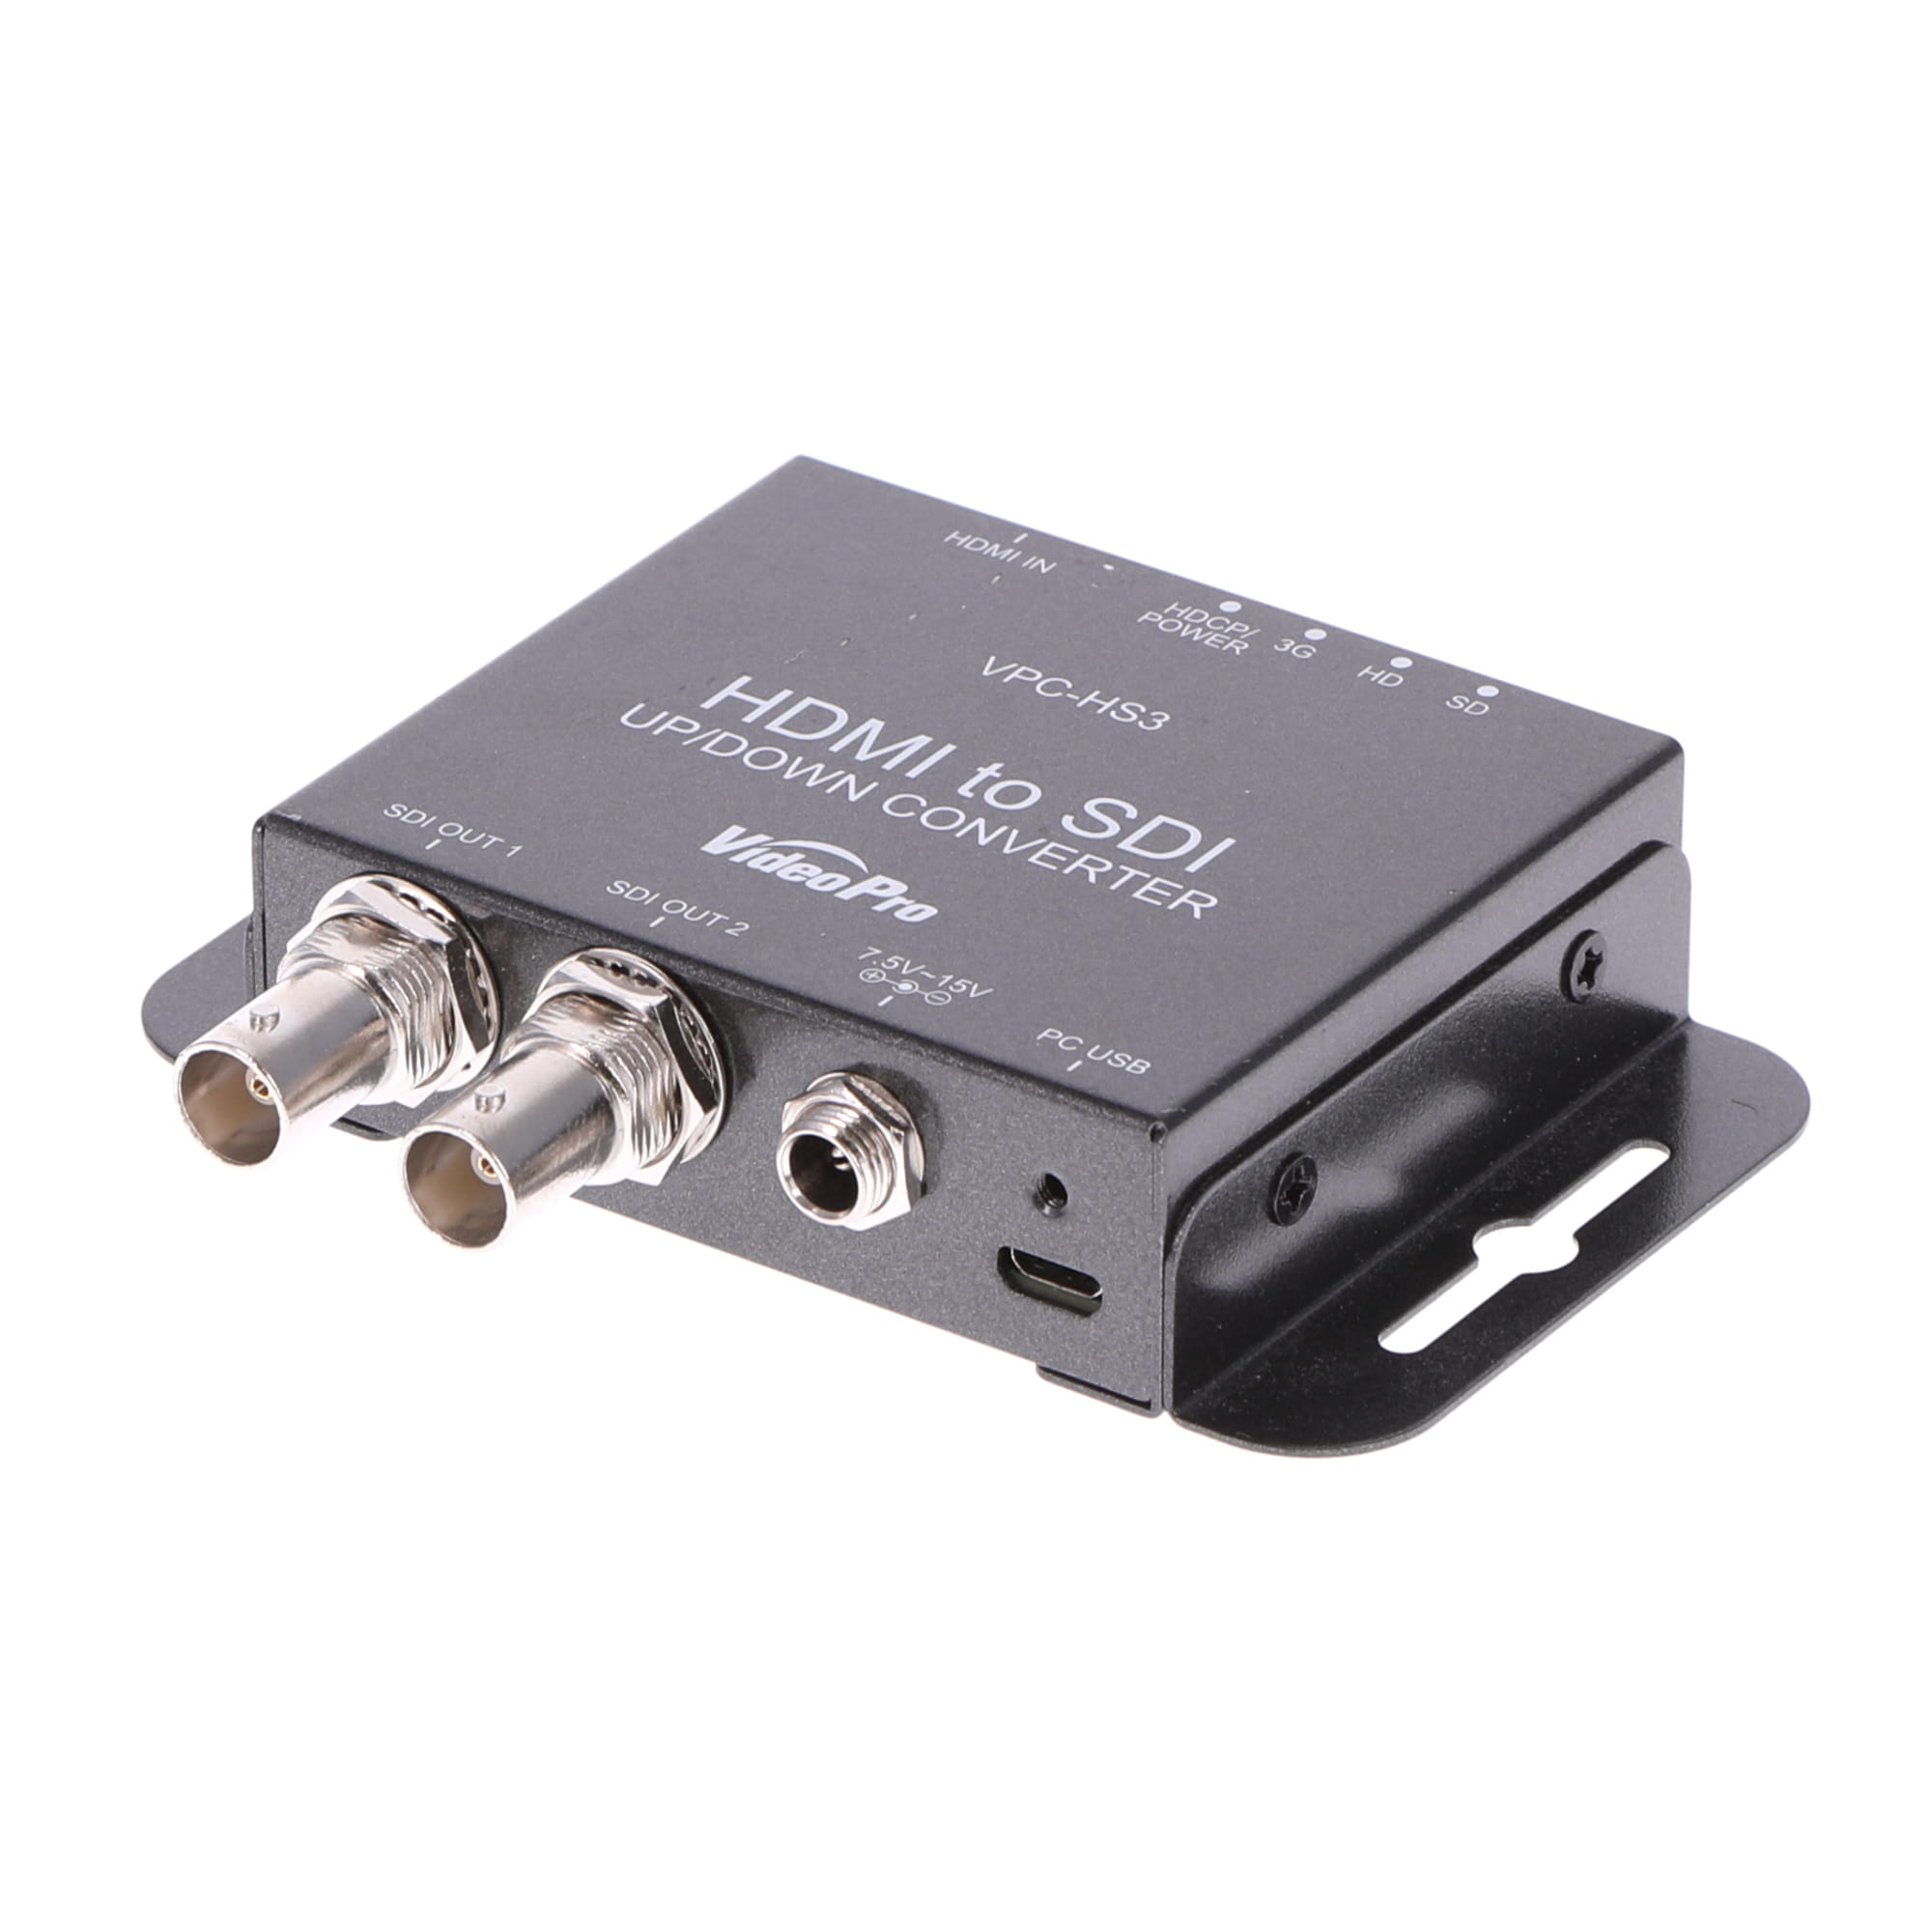 HDMI to SDIコンバーター VPC-HS3